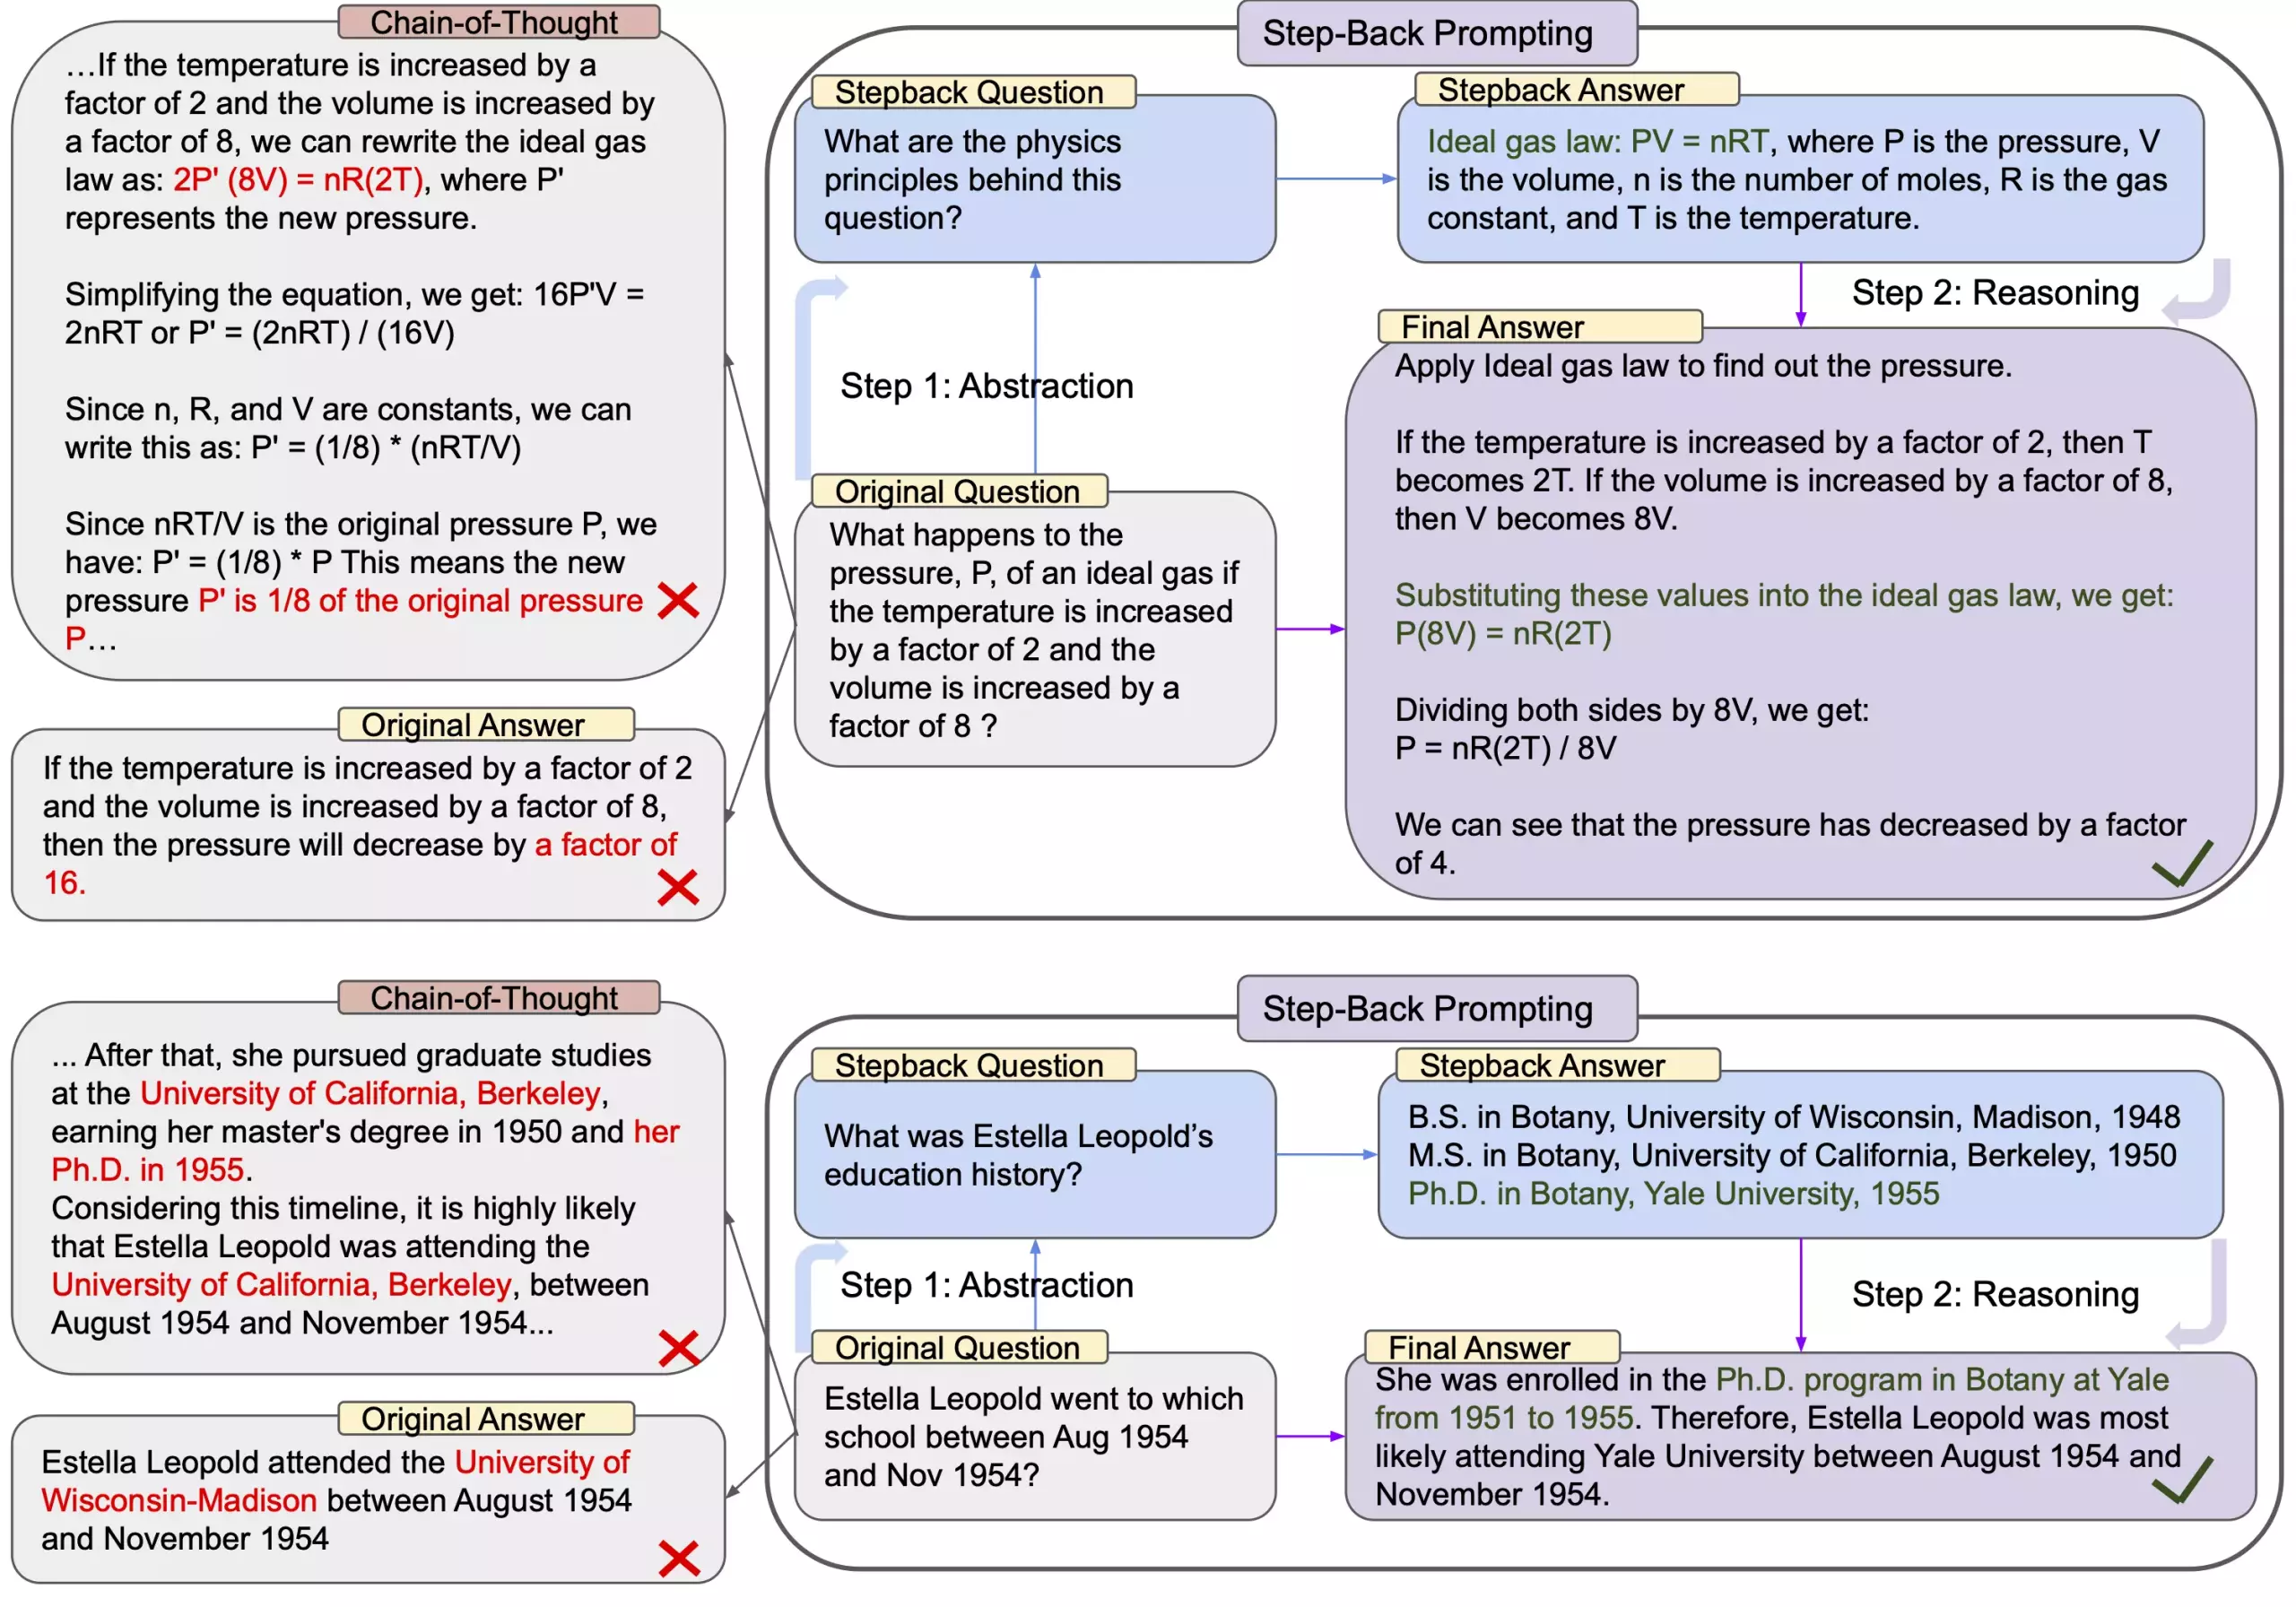 图 5 展示了对 TimeQA 上 Step-Back Prompting 进行的深入分析和错误分类。